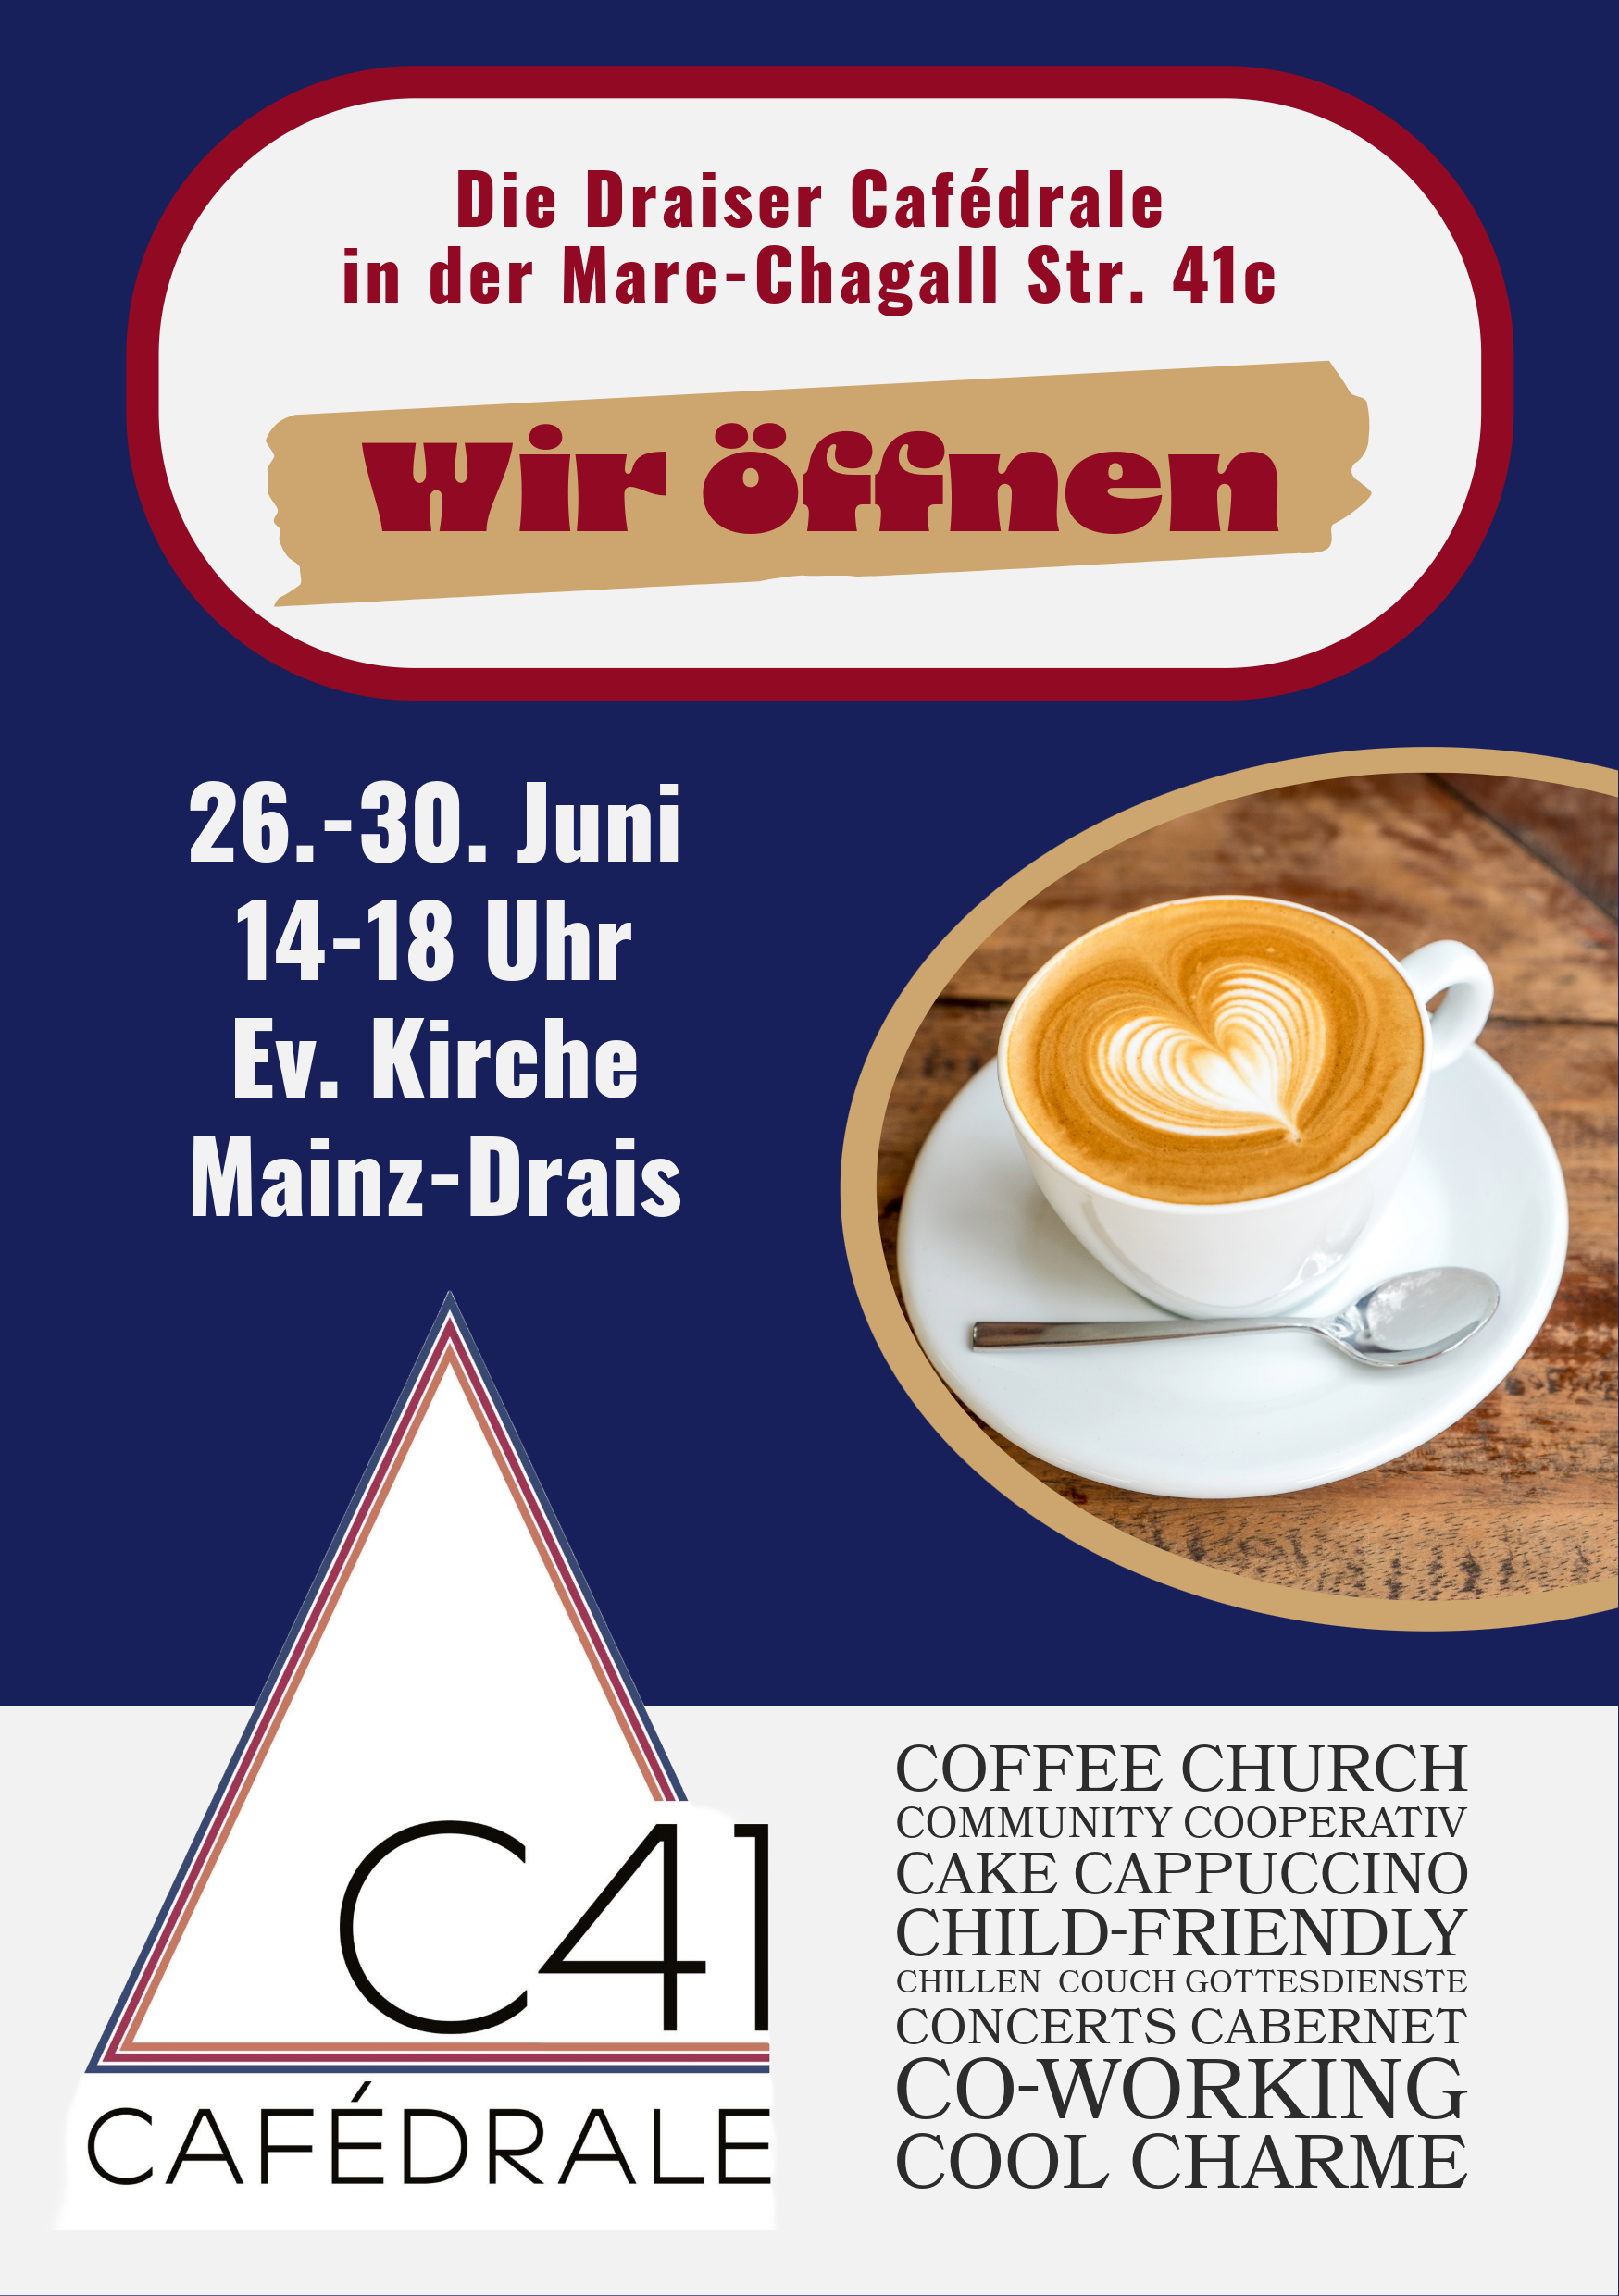 C41 Cafedrale (c) Christoph Kiworr